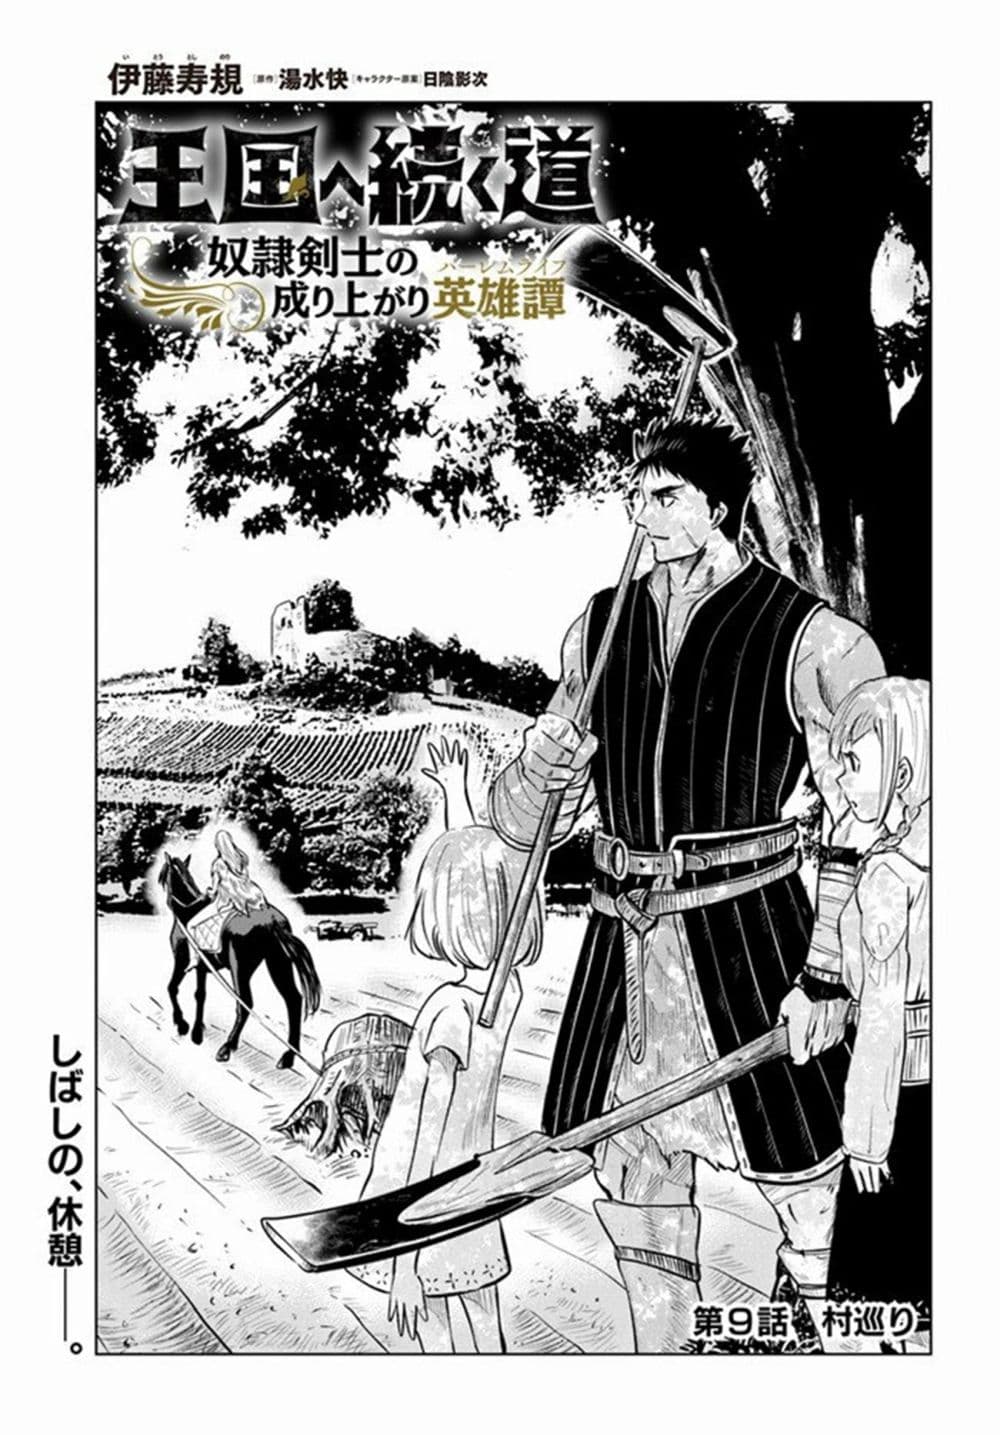 Oukoku e Tsuzuku Michi dorei Kenshi no Nariagari Eiyutan (Haaremu Raifu) - Road to the Kingdom Slave Swordsman the Rise of Heroes - Harem Life 9.1-9.1